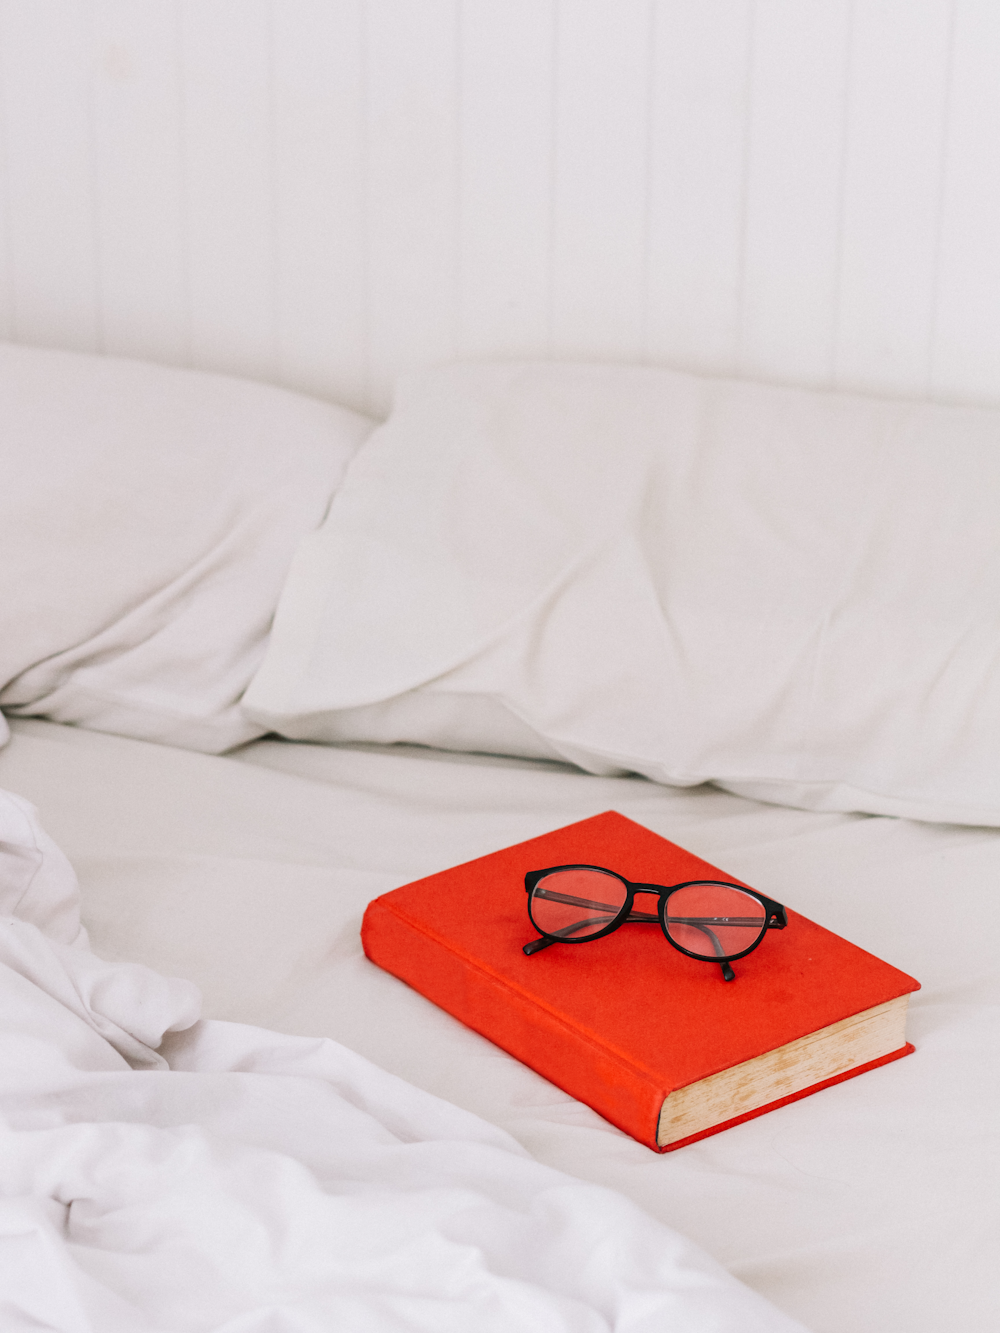 occhiali da vista con montatura nera su libro arancione